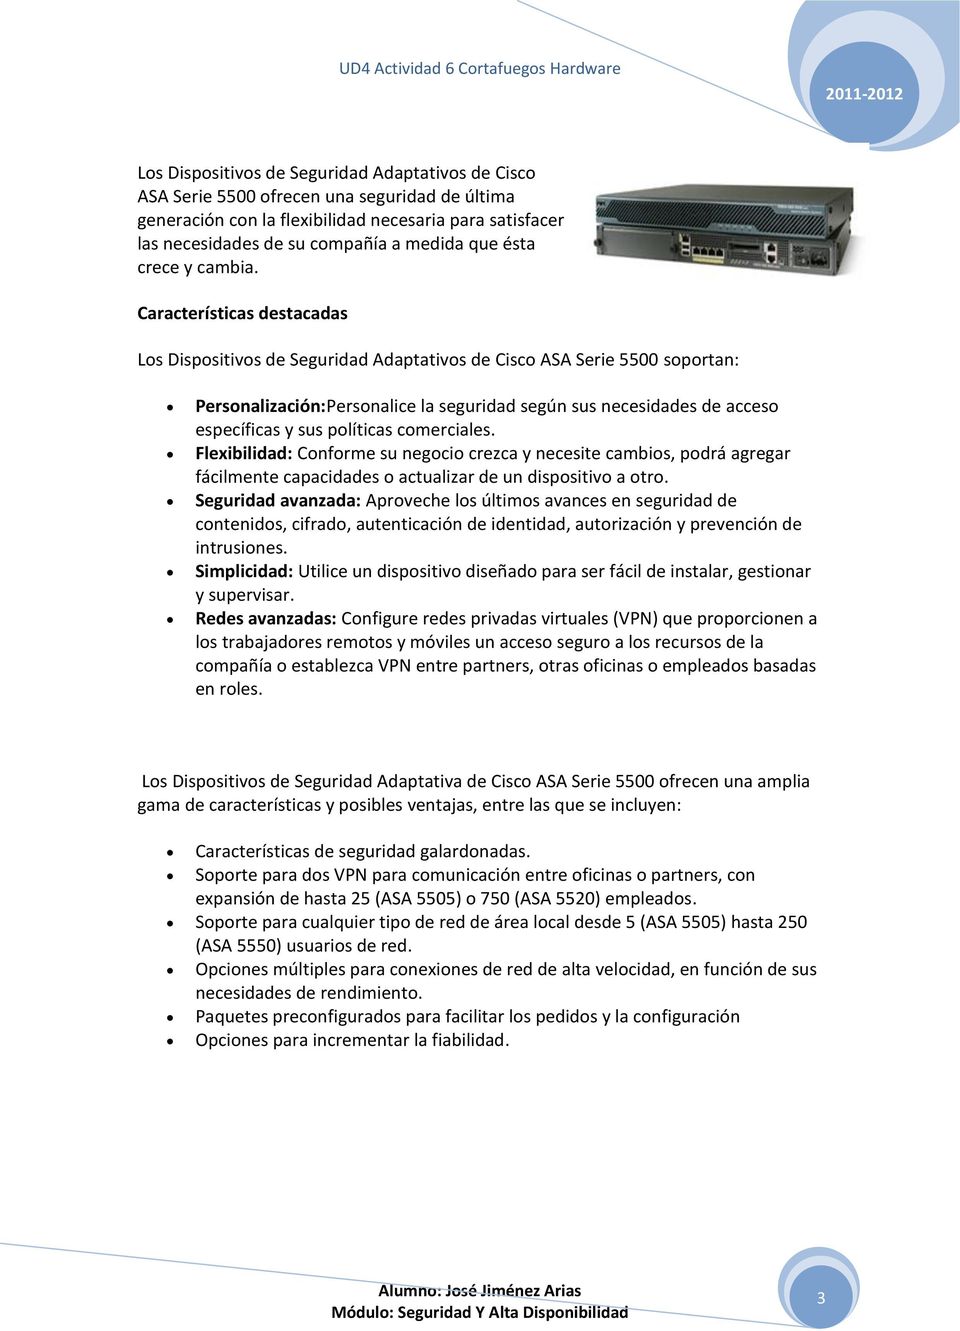 Características destacadas Los Dispositivos de Seguridad Adaptativos de Cisco ASA Serie 5500 soportan: Personalización:Personalice la seguridad según sus necesidades de acceso específicas y sus